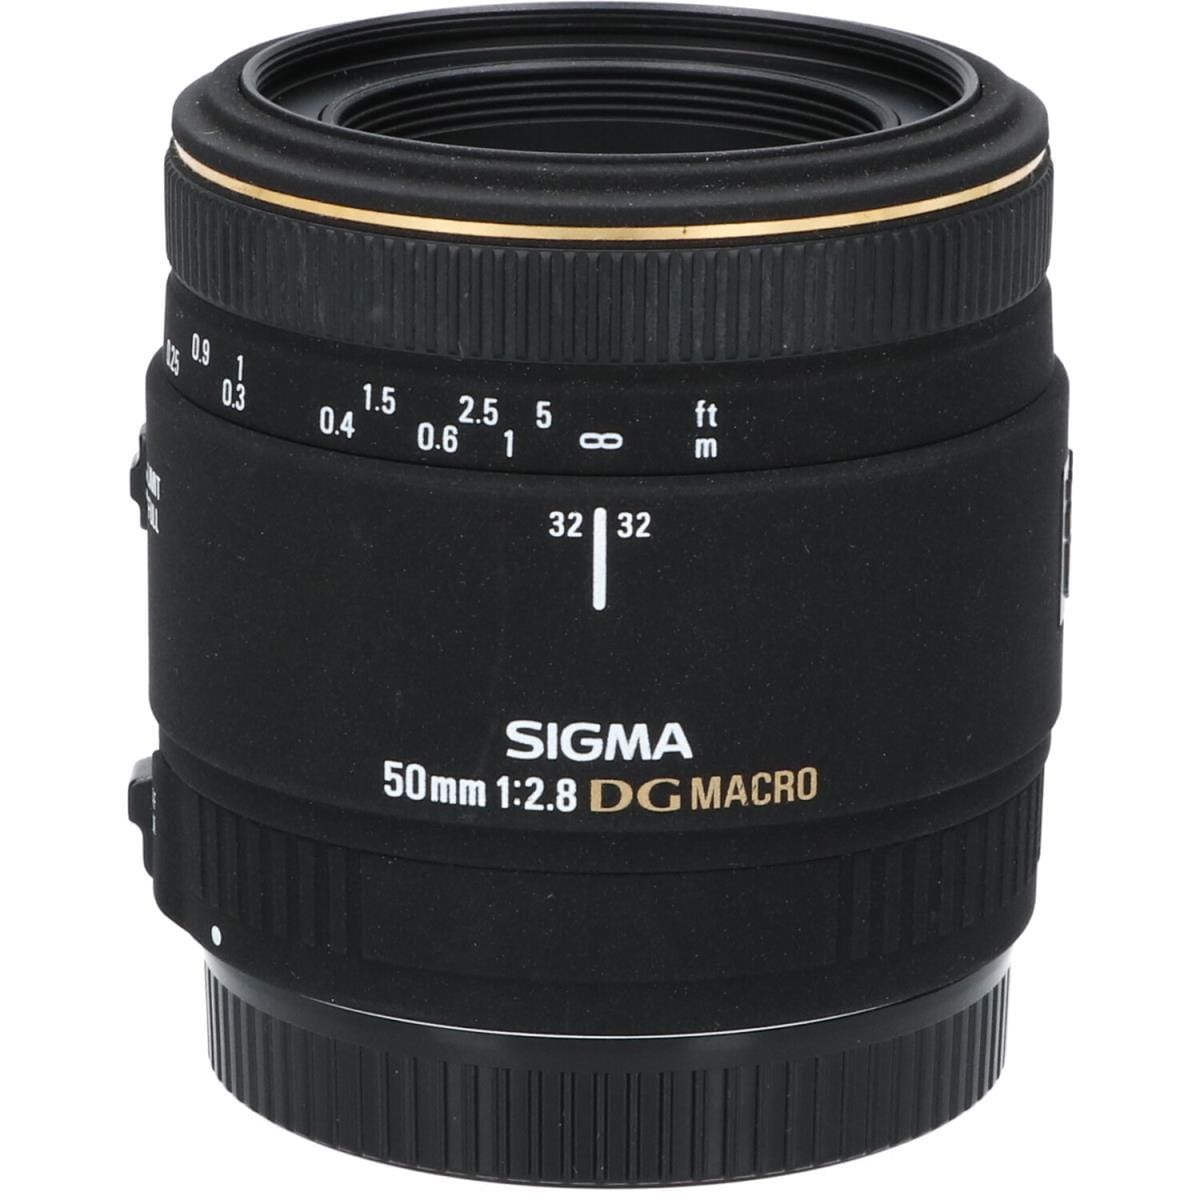 SIGMA EOS50mm F2.8EX DG MACRO